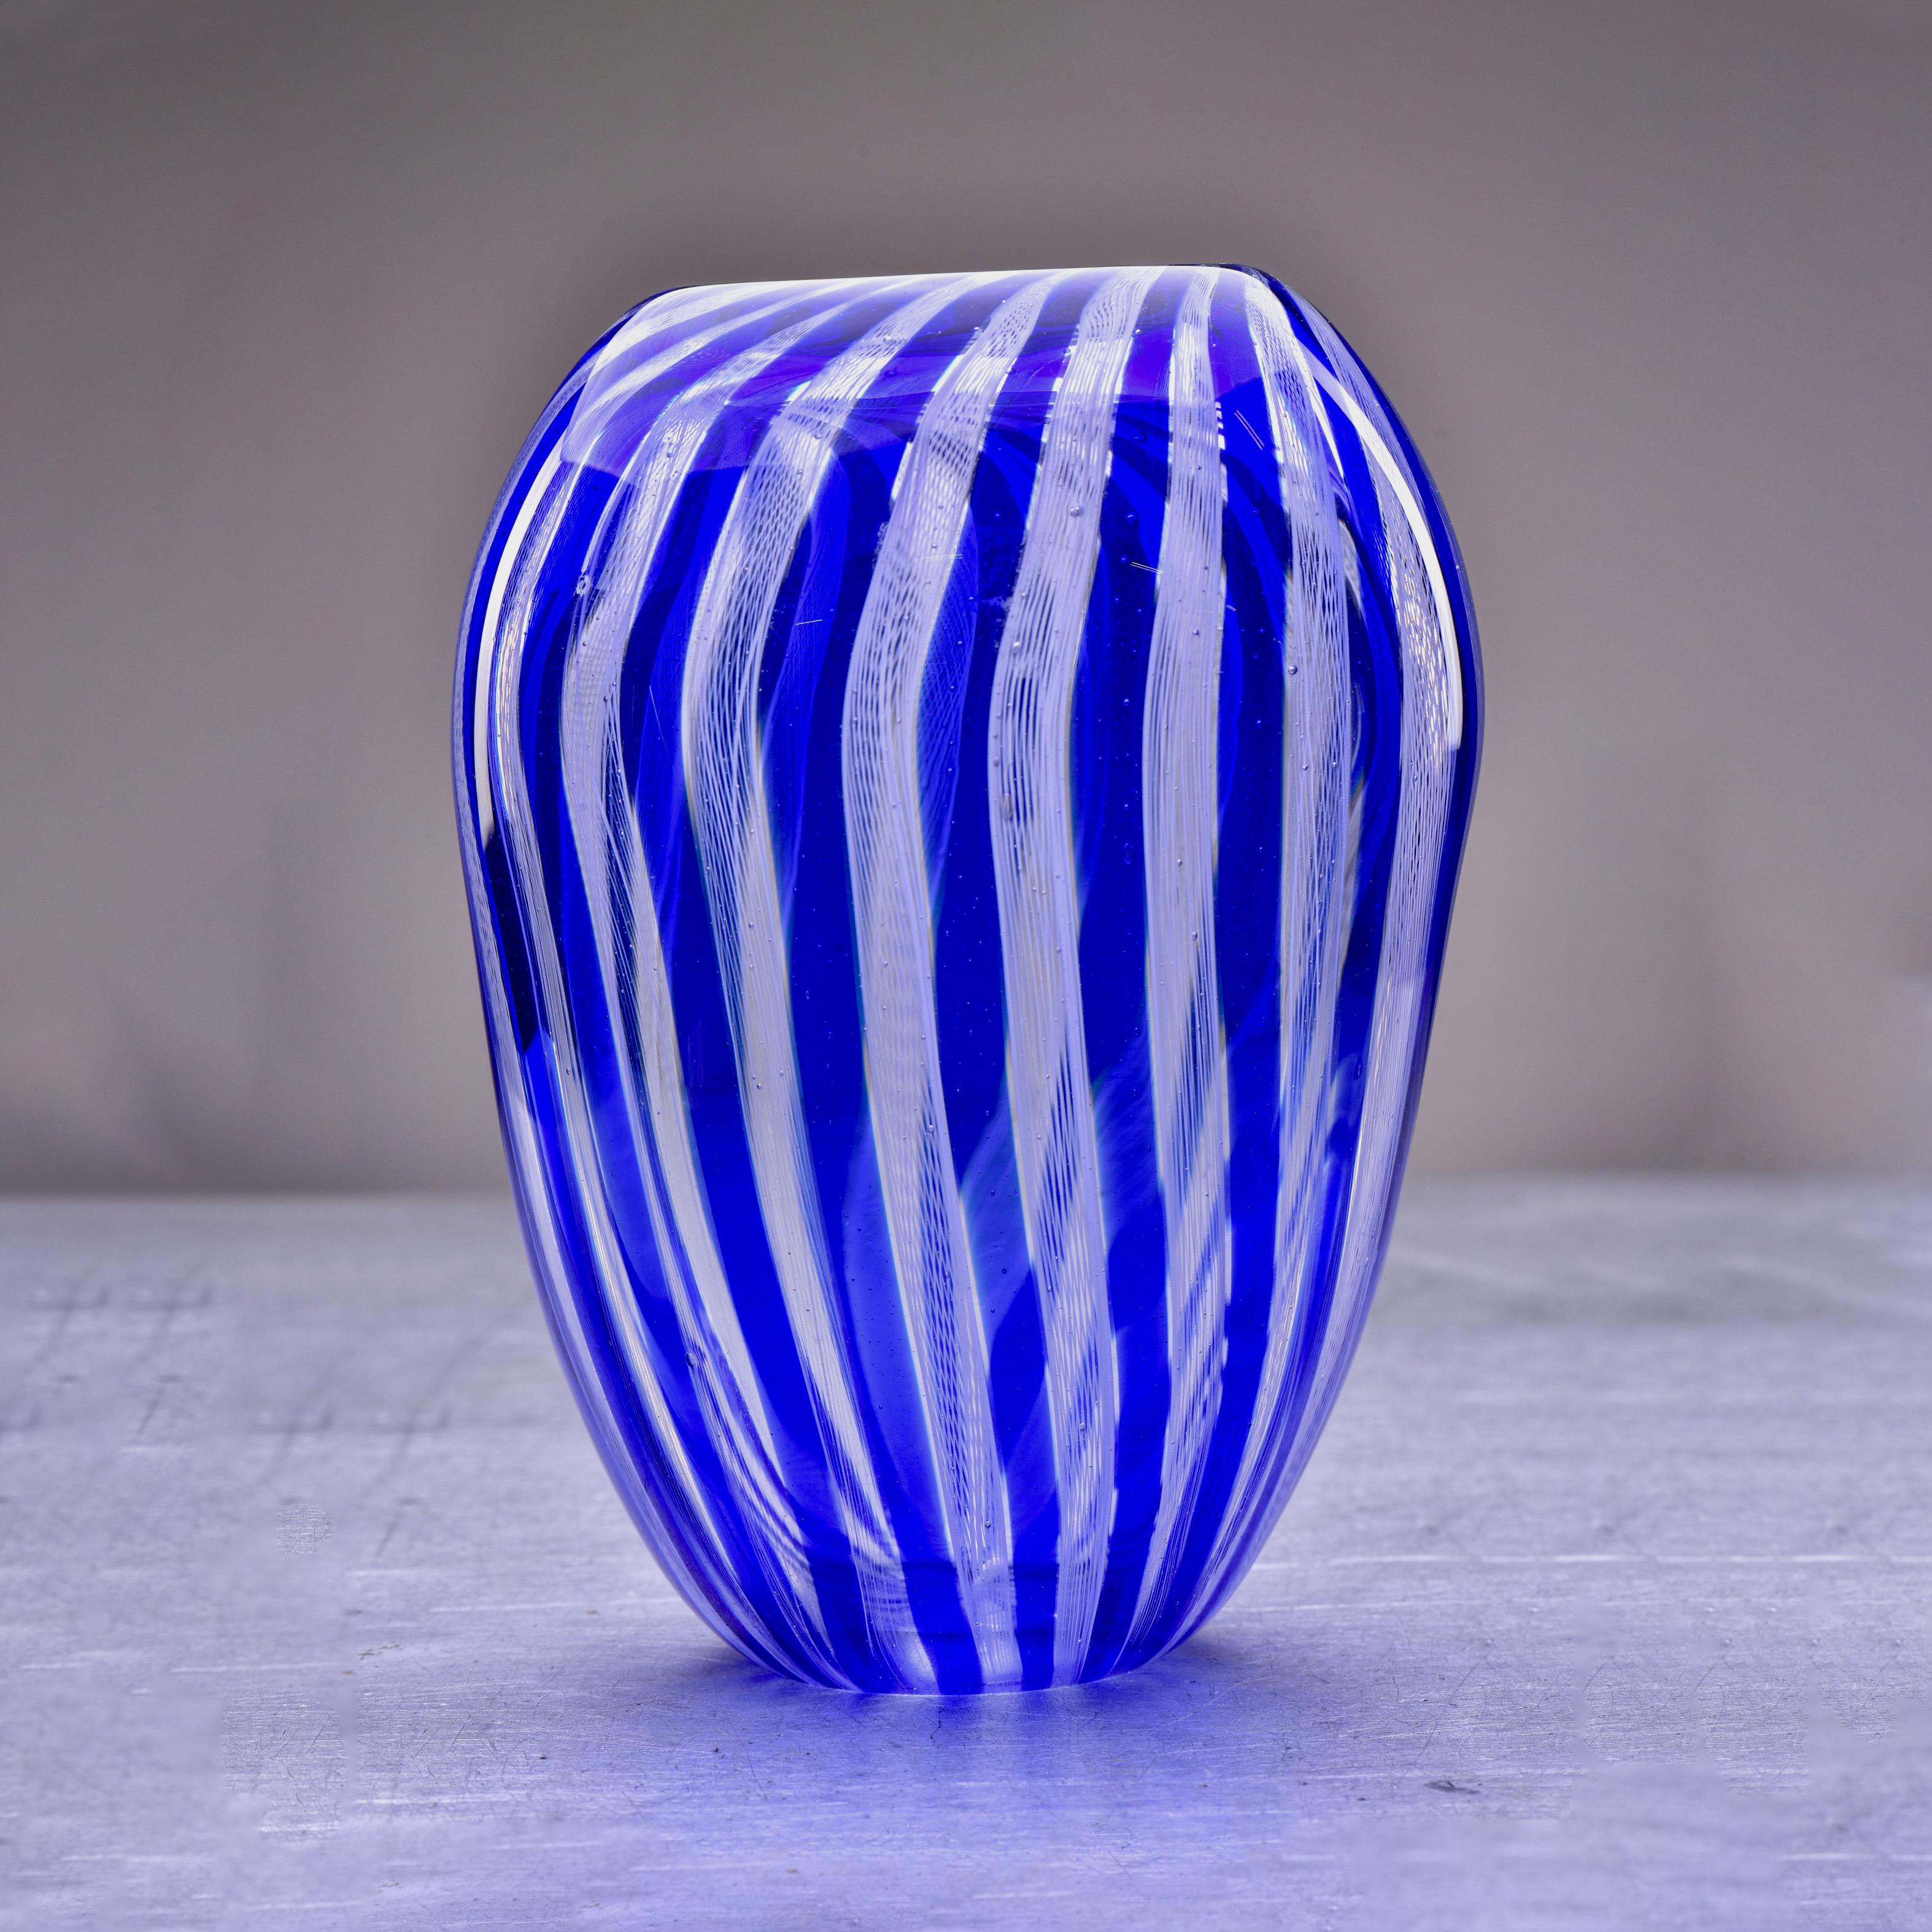 Circa 2020 tall blue and white filigree striped zanfirico Murano glass vase. Unsigned, unknown Murano maker.